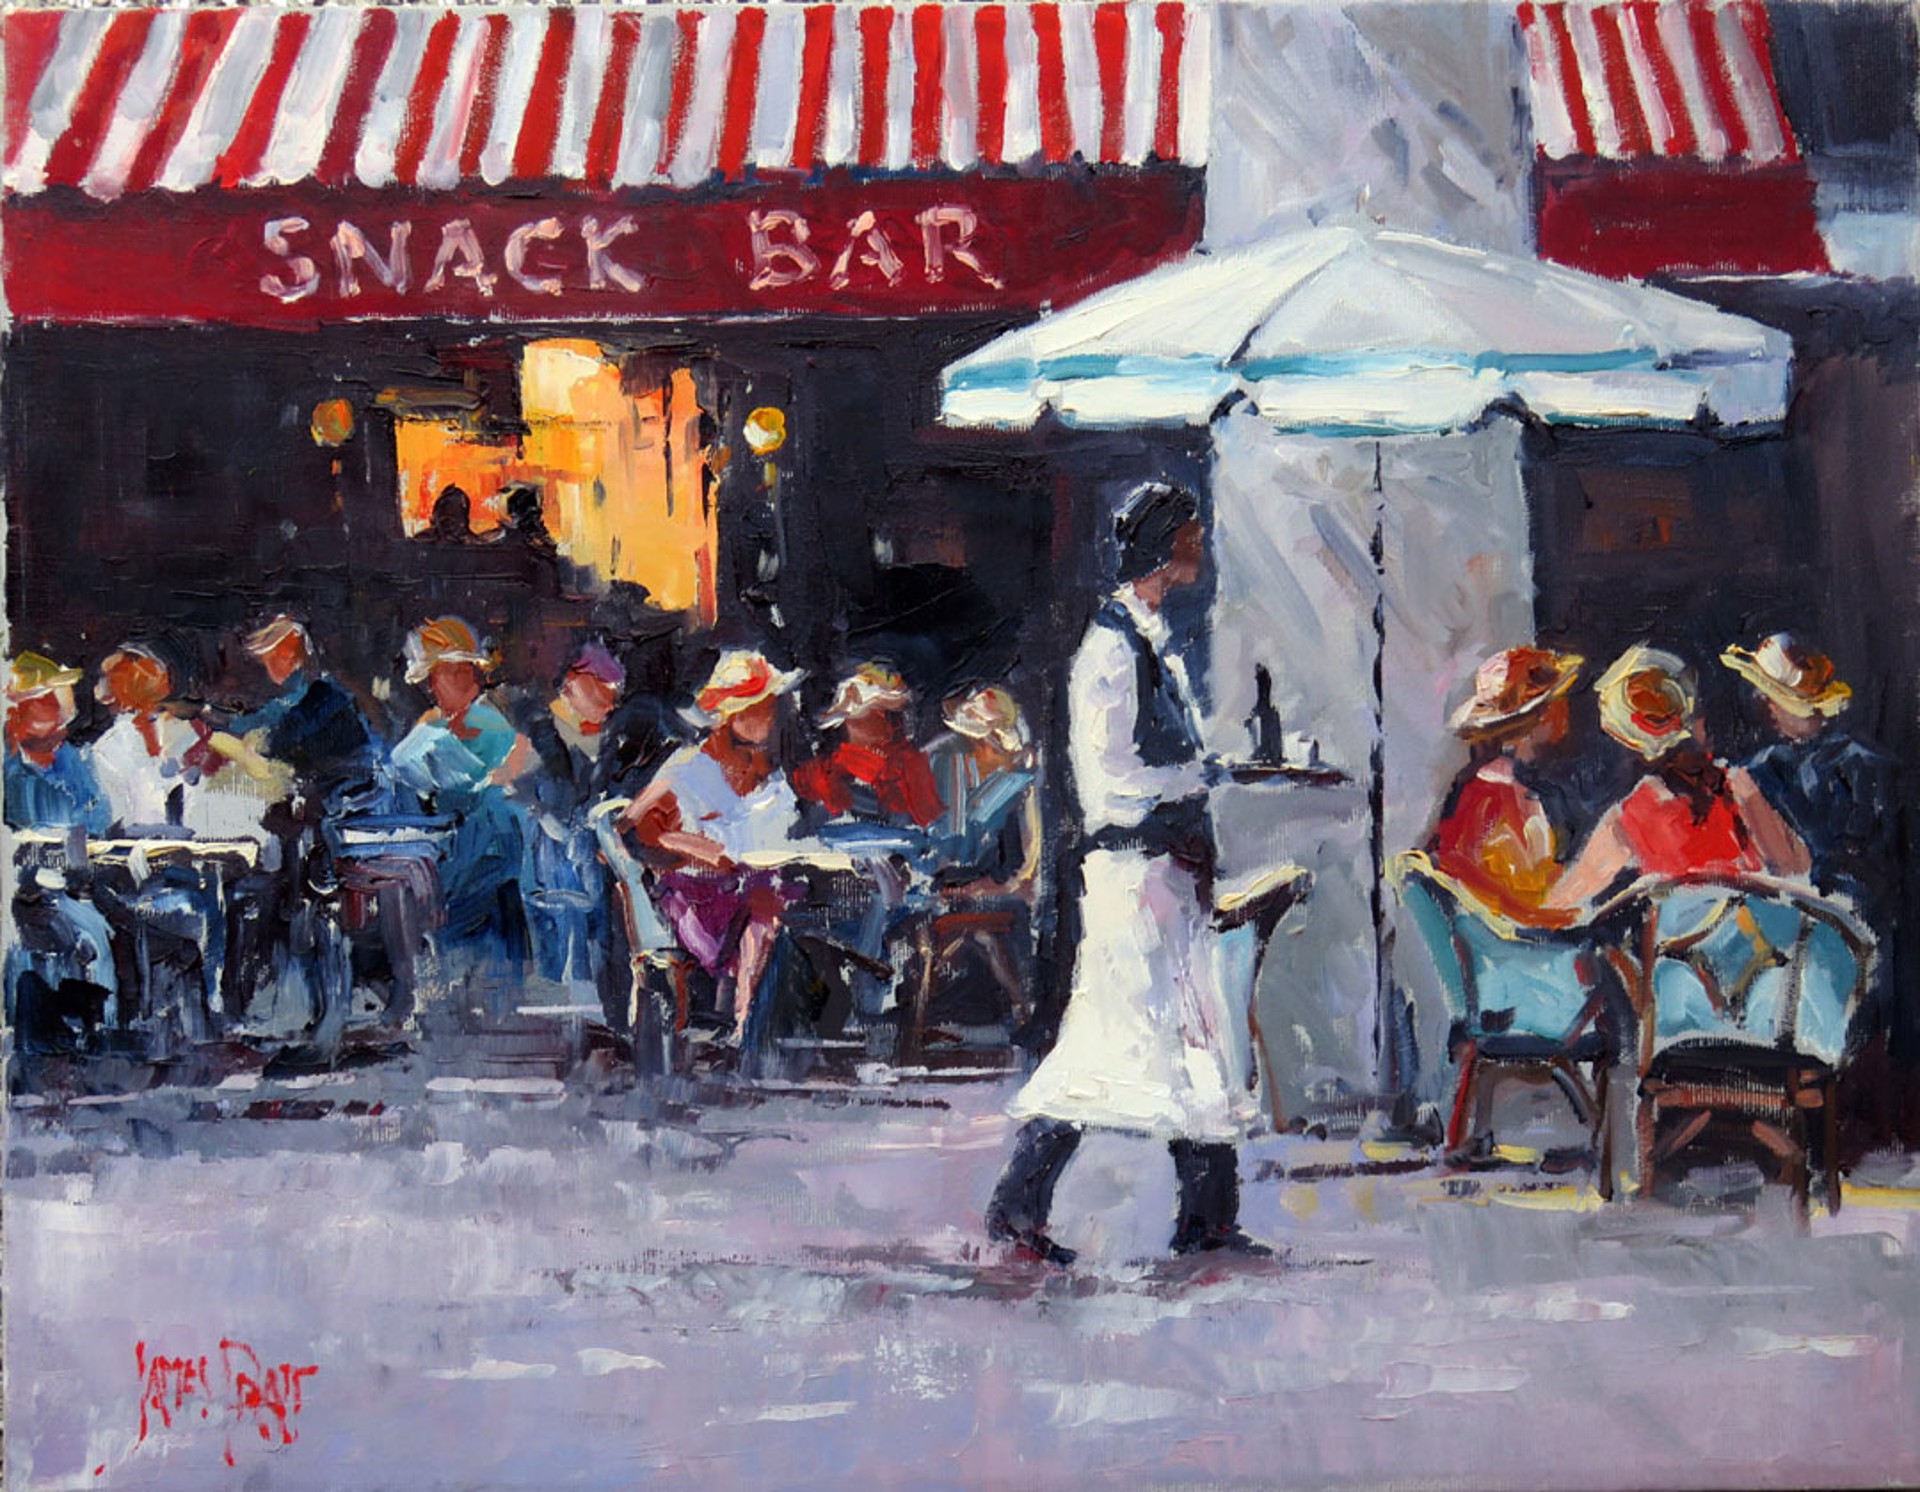 The Snack Bar by James Pratt